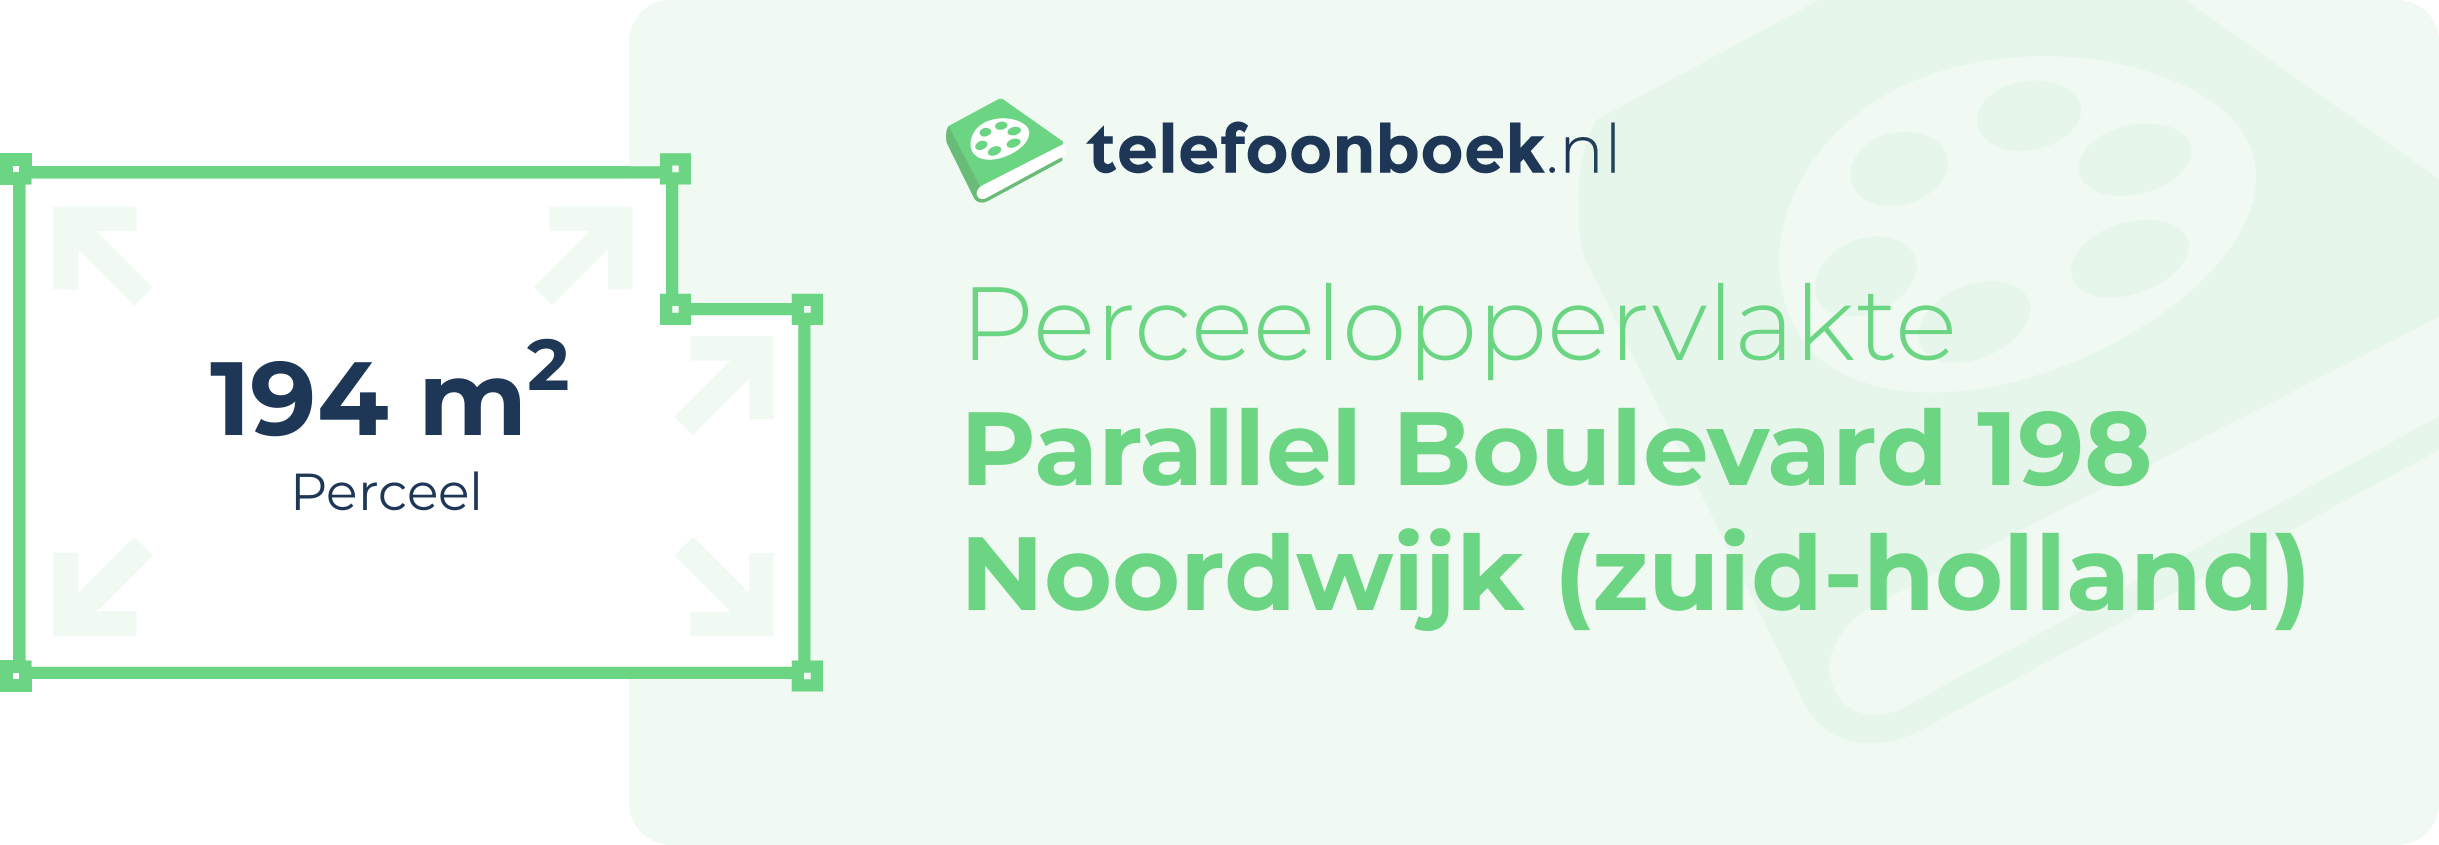 Perceeloppervlakte Parallel Boulevard 198 Noordwijk (Zuid-Holland)